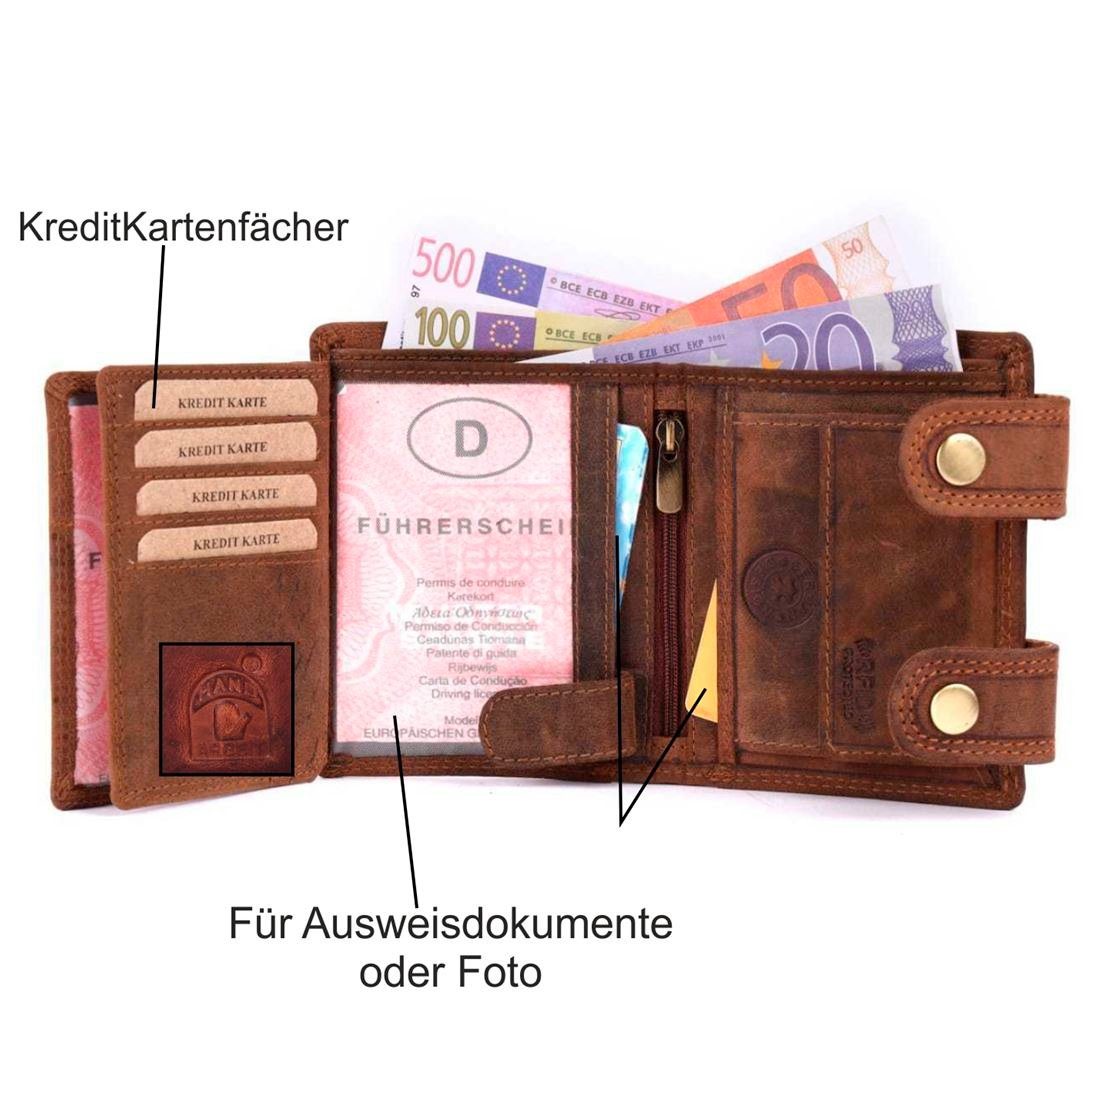 SHG Geldbörse Herren RFID Münzfach mit Leder Lederbörse Börse Büffelleder Portemonnaie, Schutz Kette mit